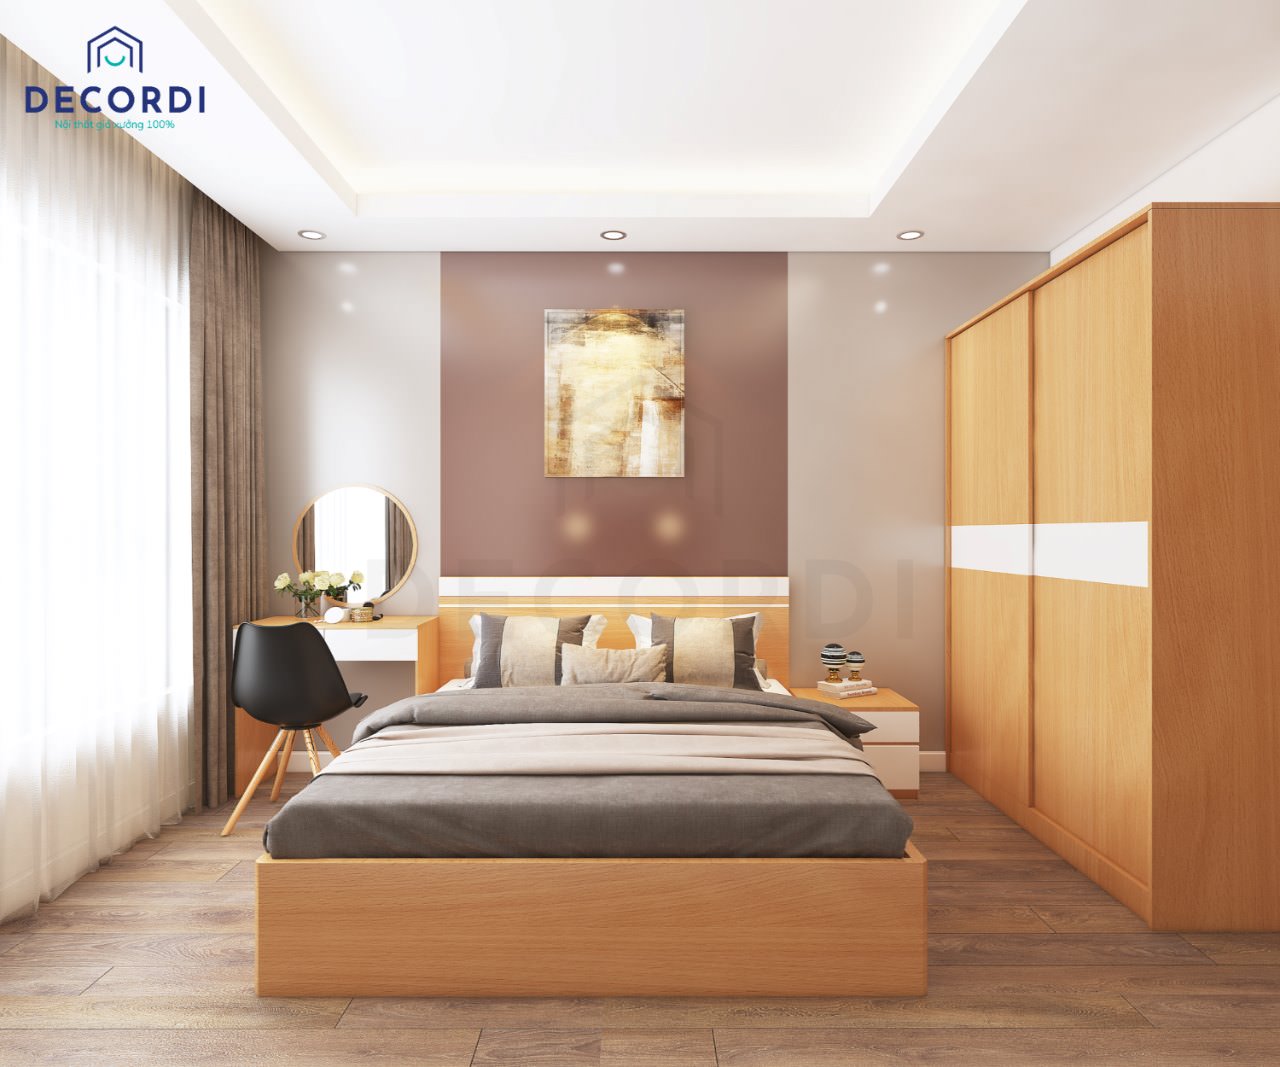 Thiết kế phòng ngủ hiện đại với tone màu cam nổi bật, cá tính